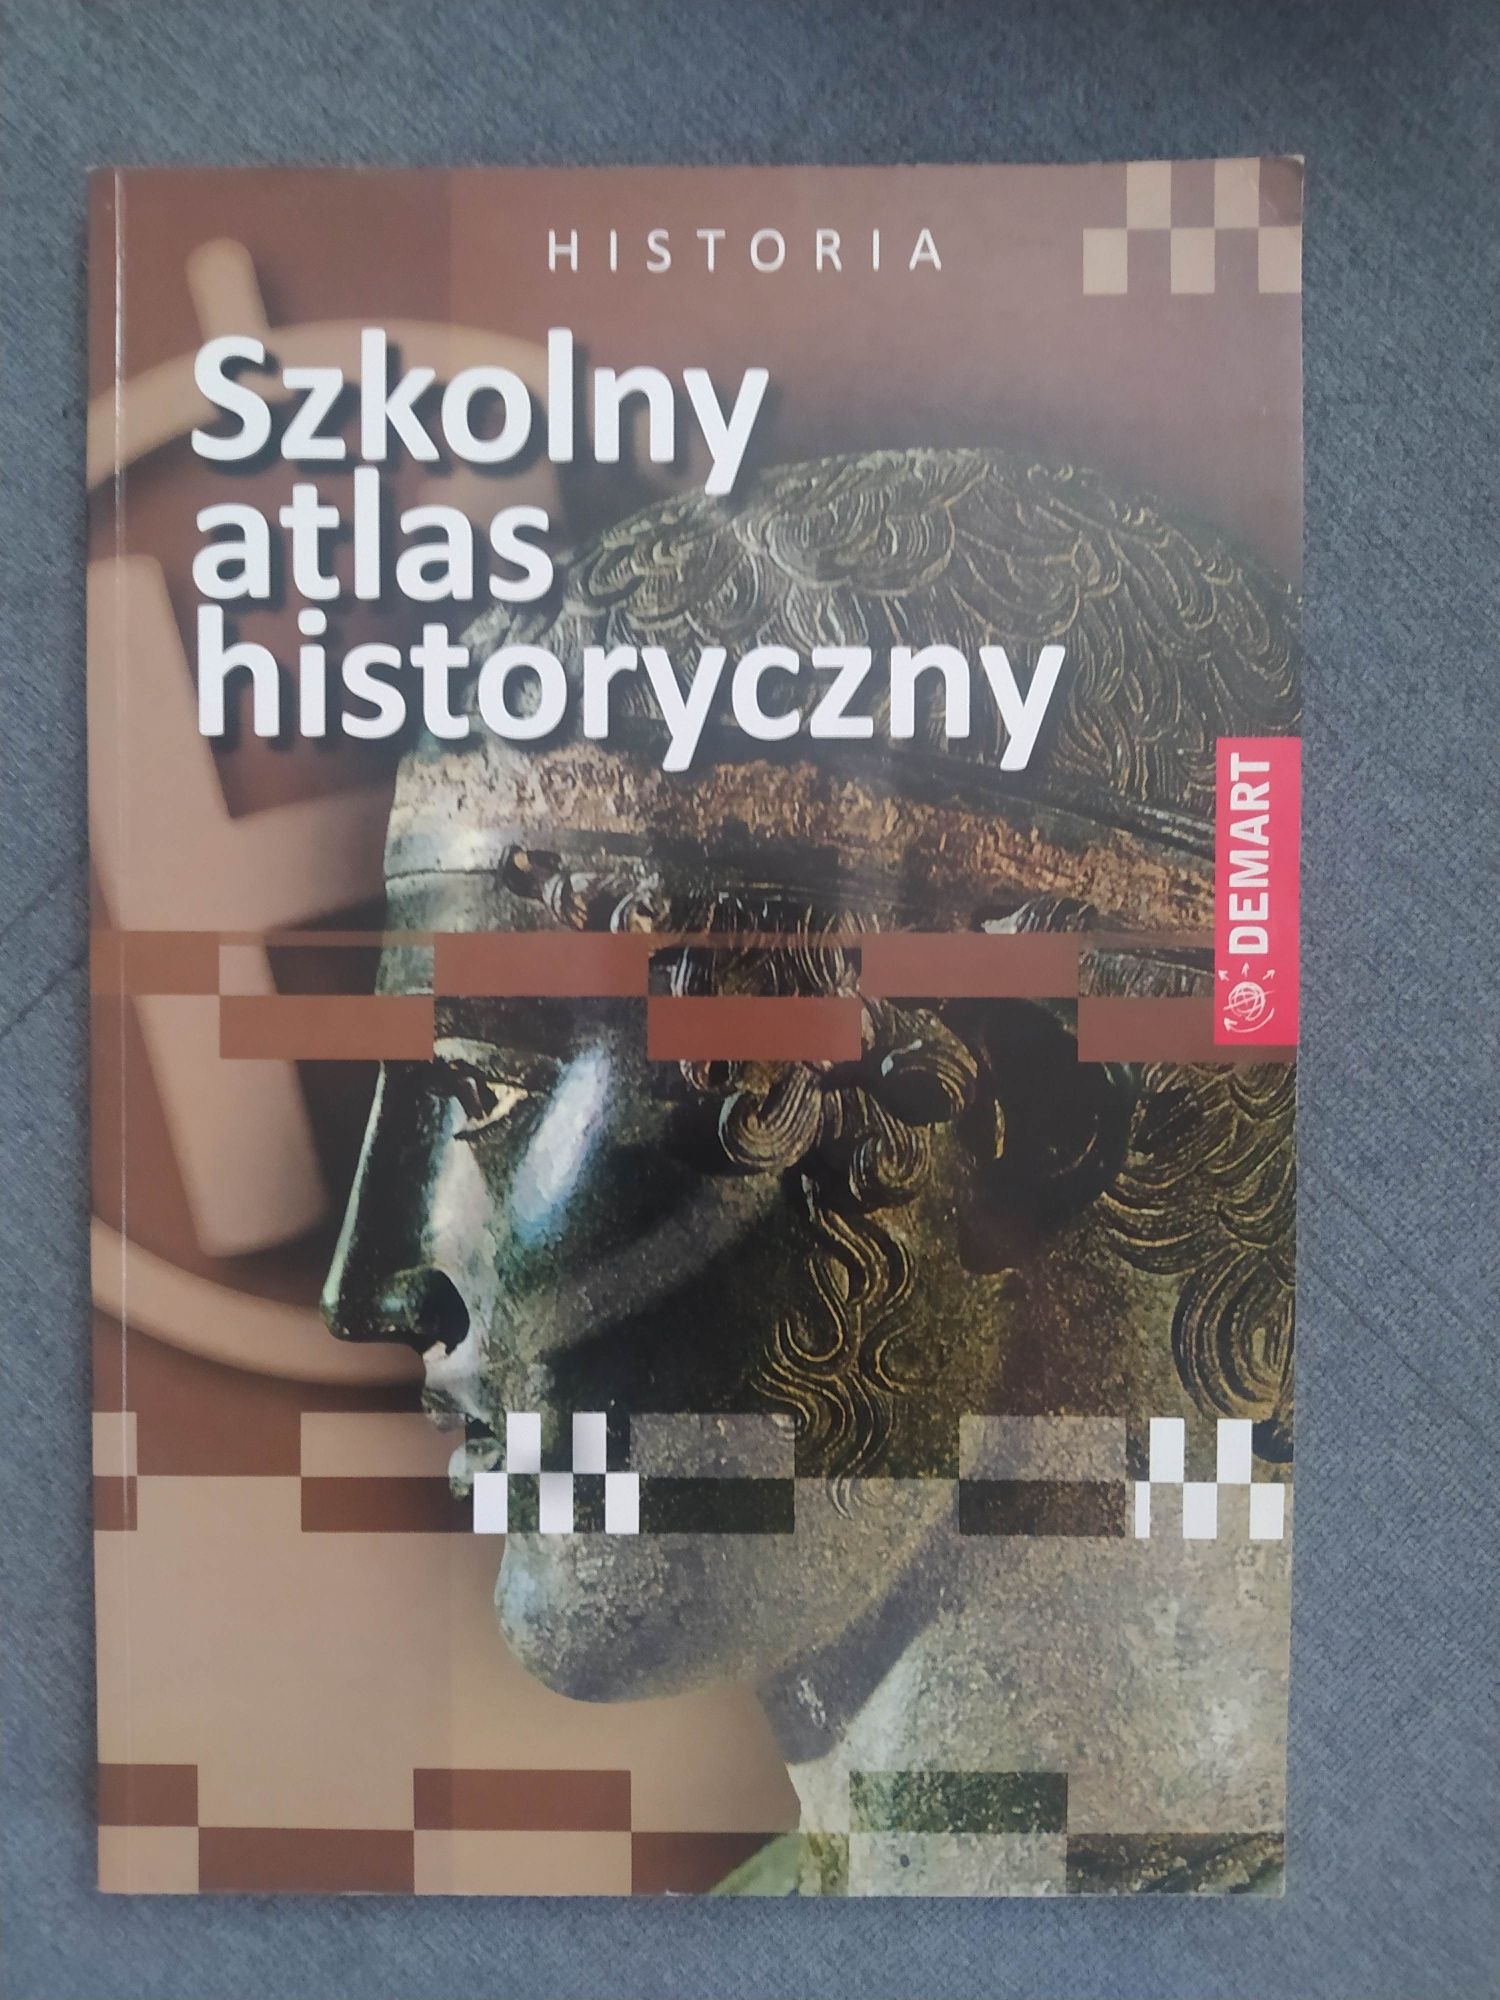 Szkolny atlas historyczny jak nowy